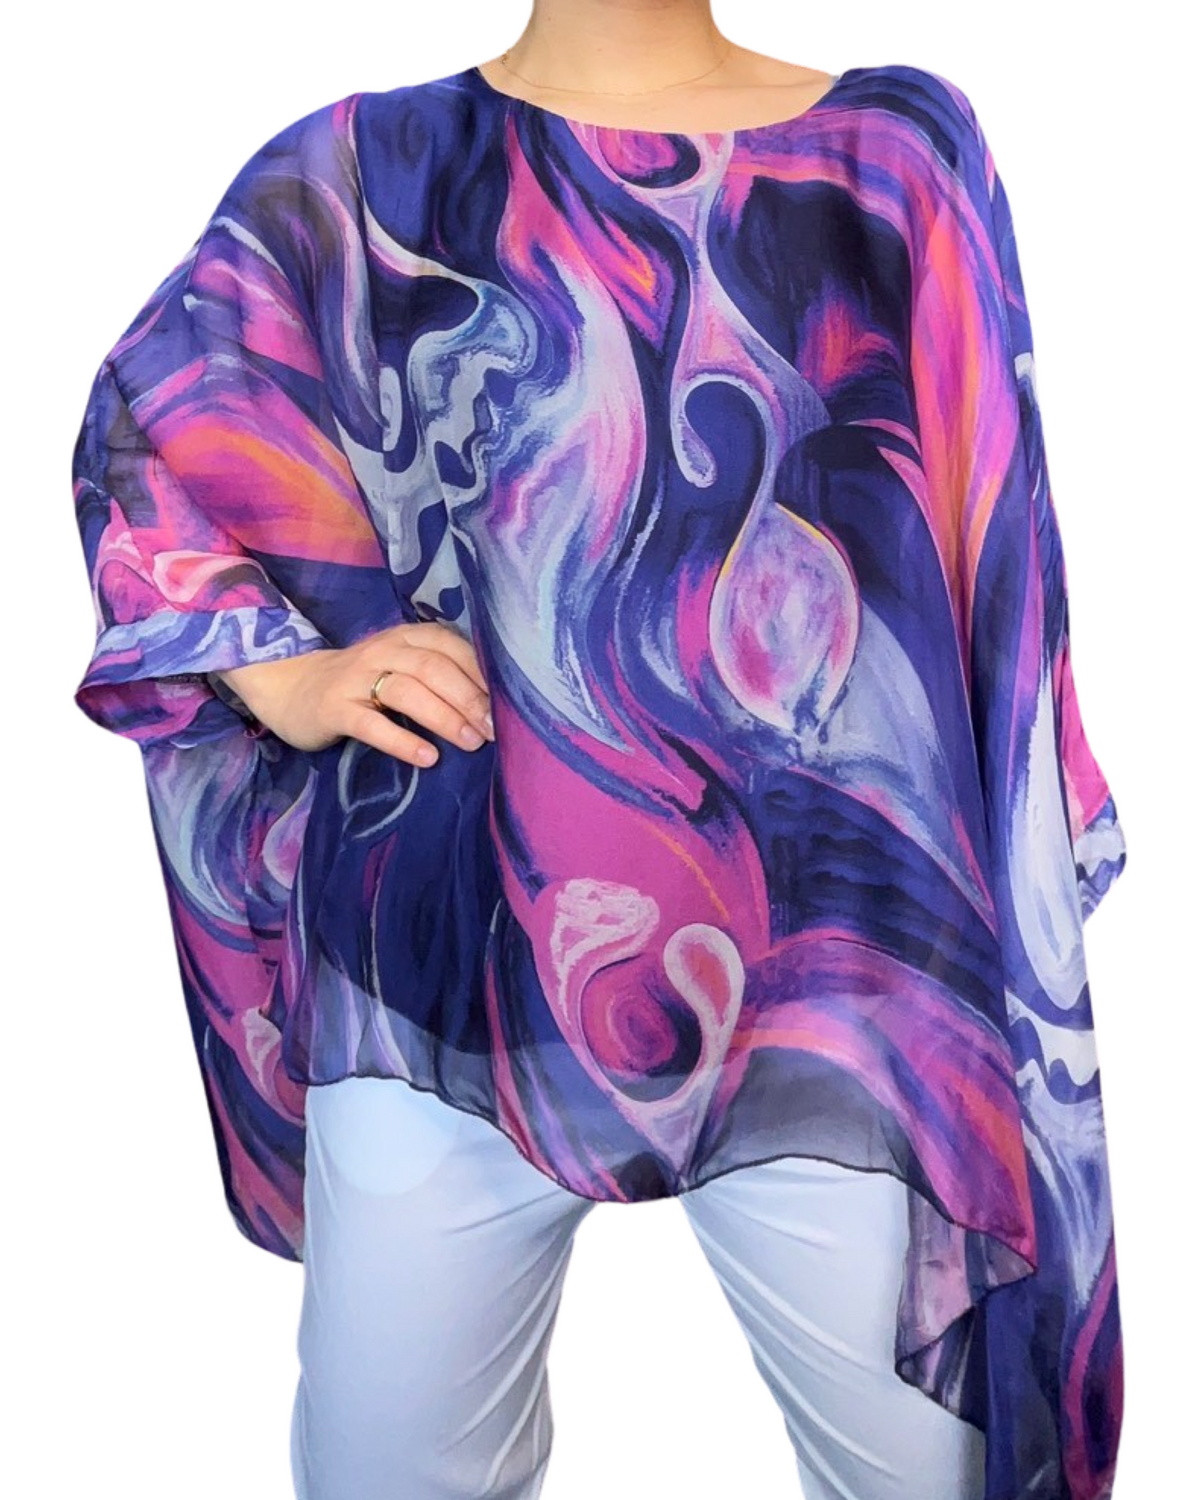 Blouse de soie pour femme avec des motifs abstraits mauves et fuchsia portée over size.